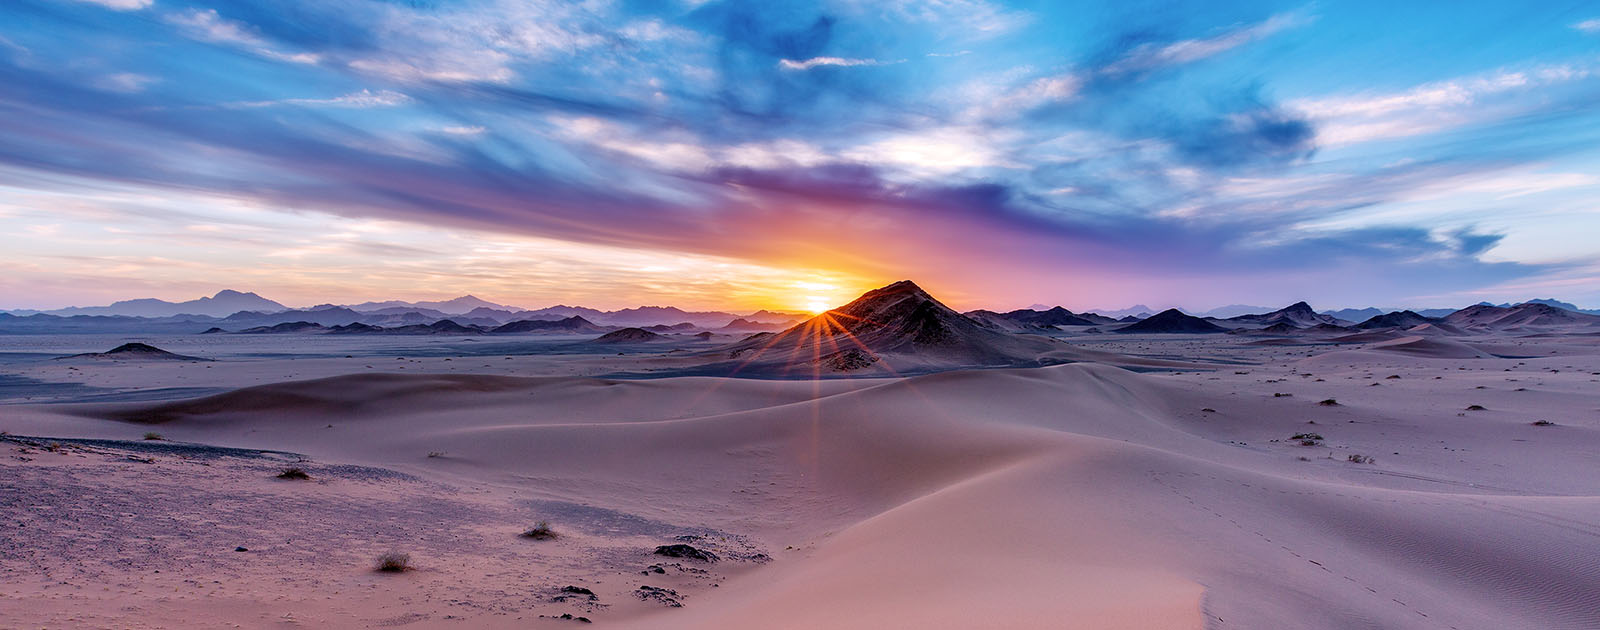 Sunset on Arabia Mountain